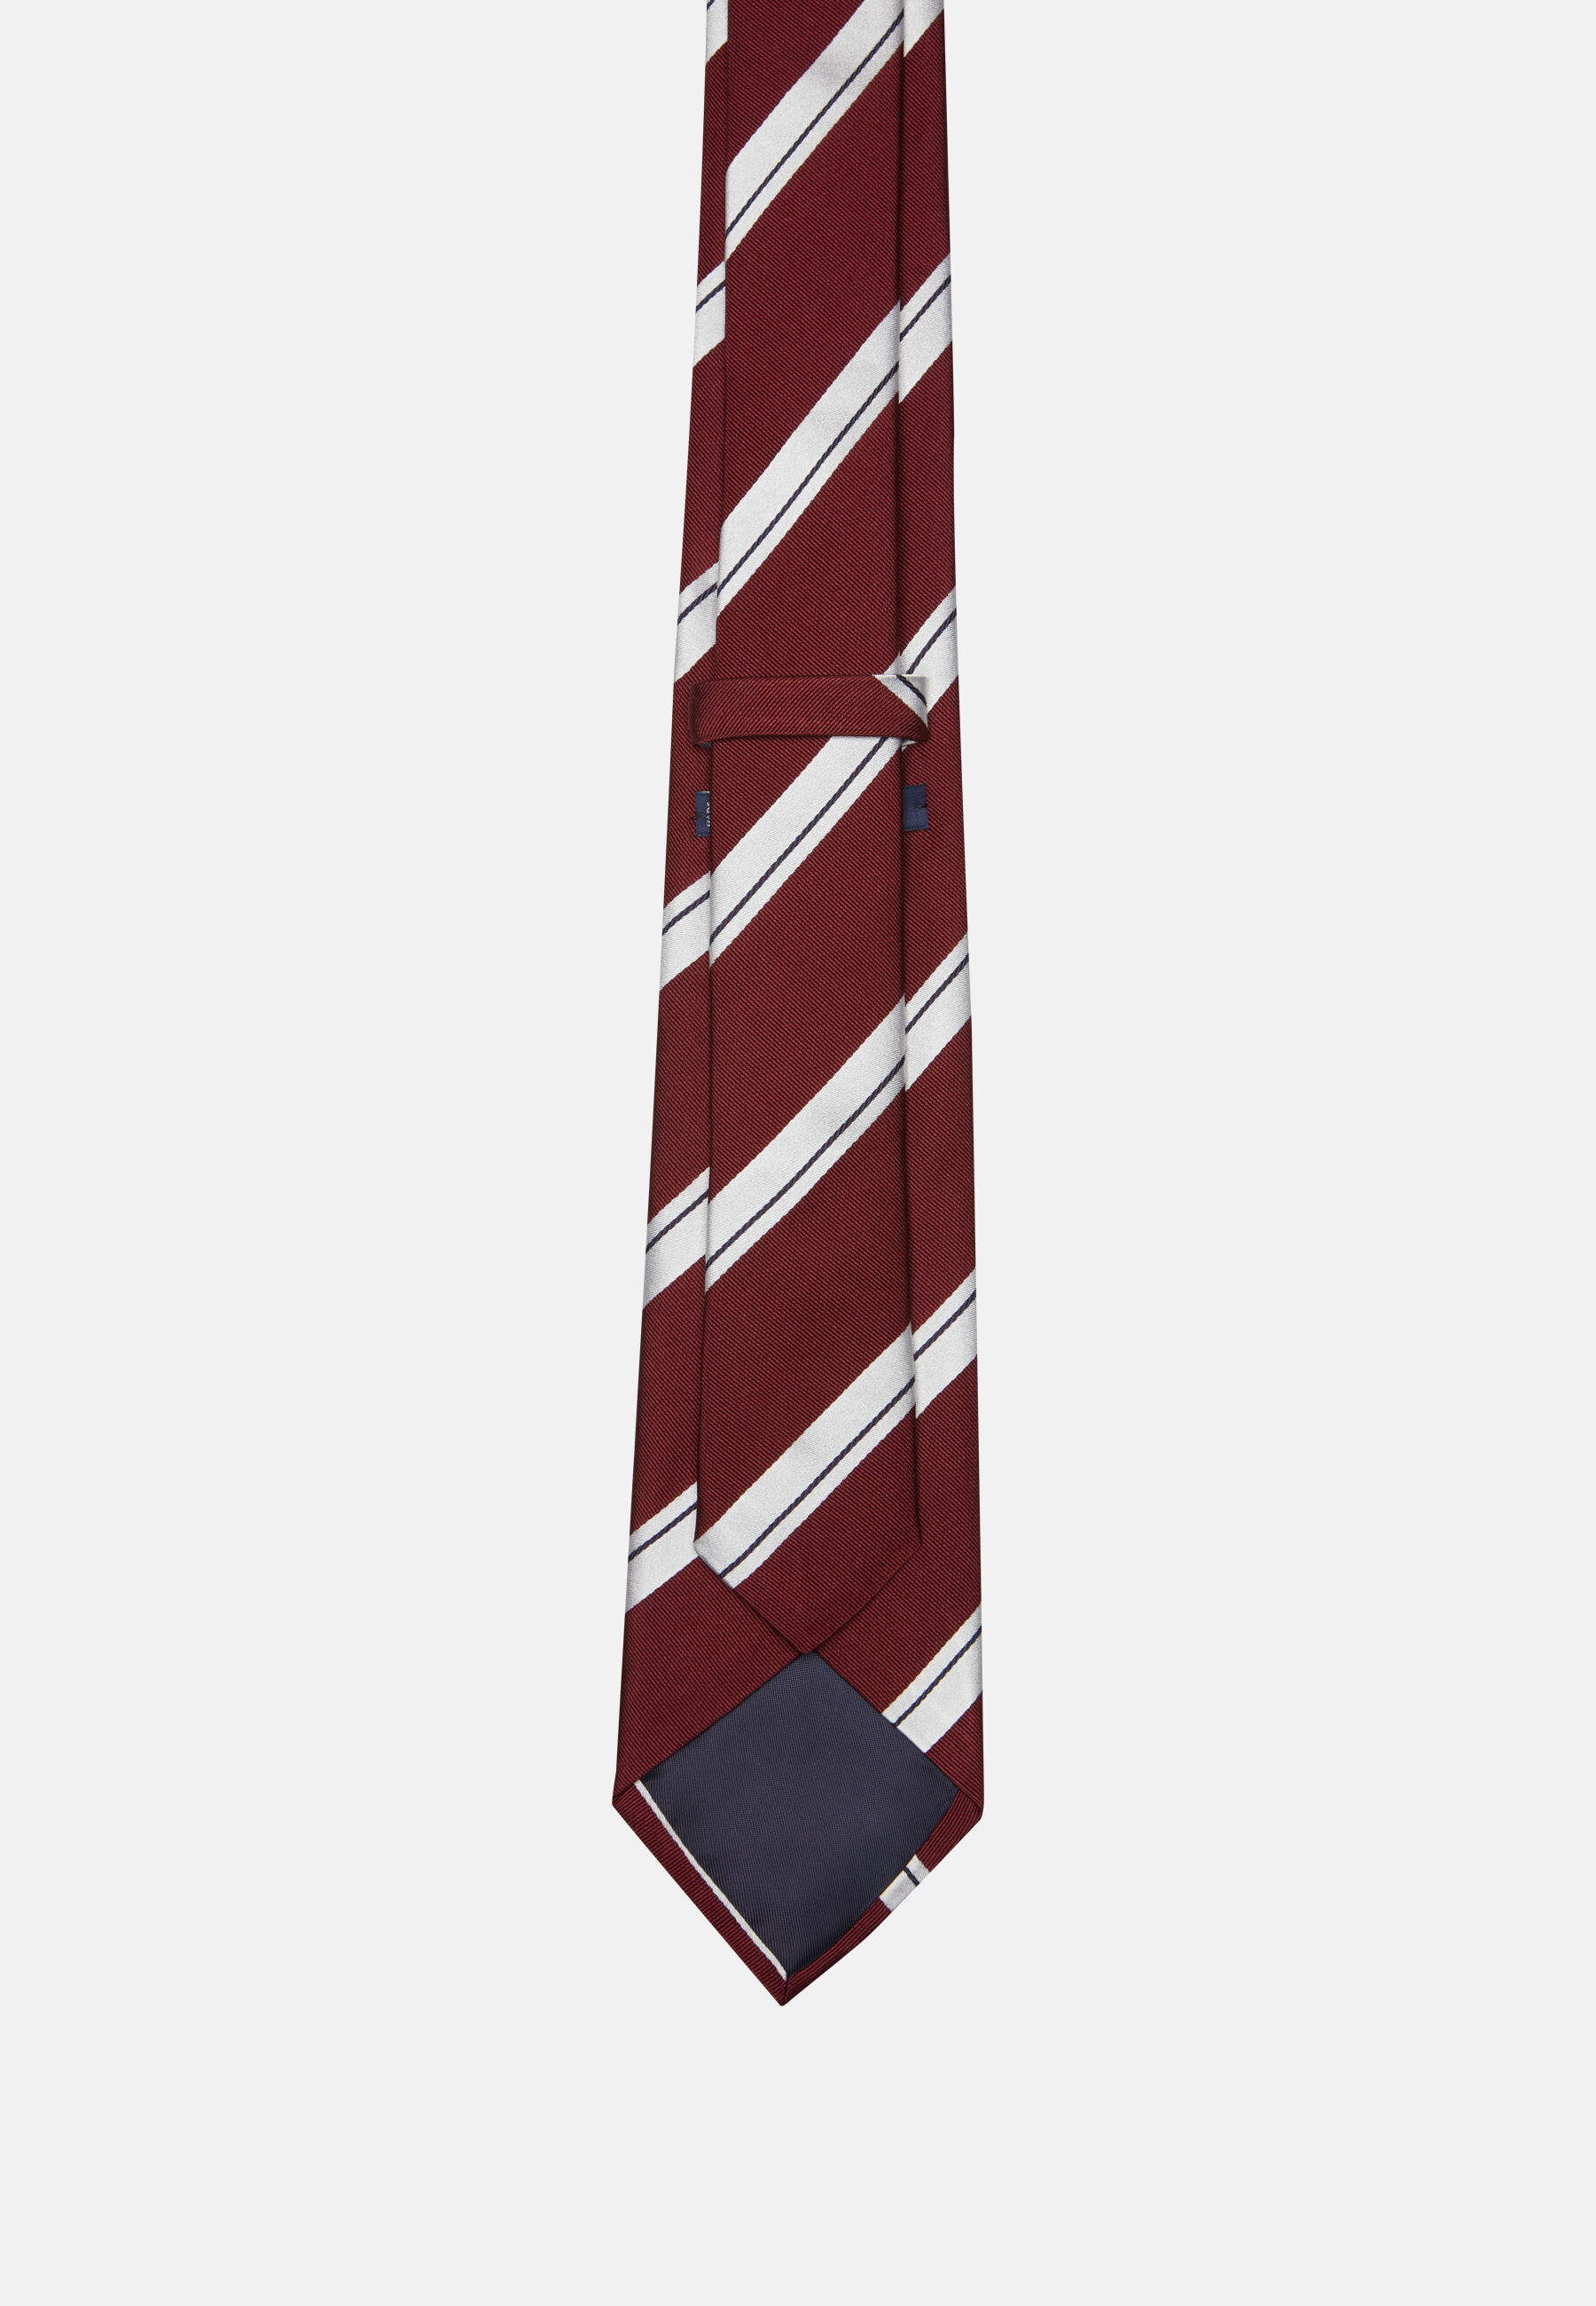 Cravatta Regimental In Seta Boggi Uomo Accessori Cravatte e accessori Cravatte 